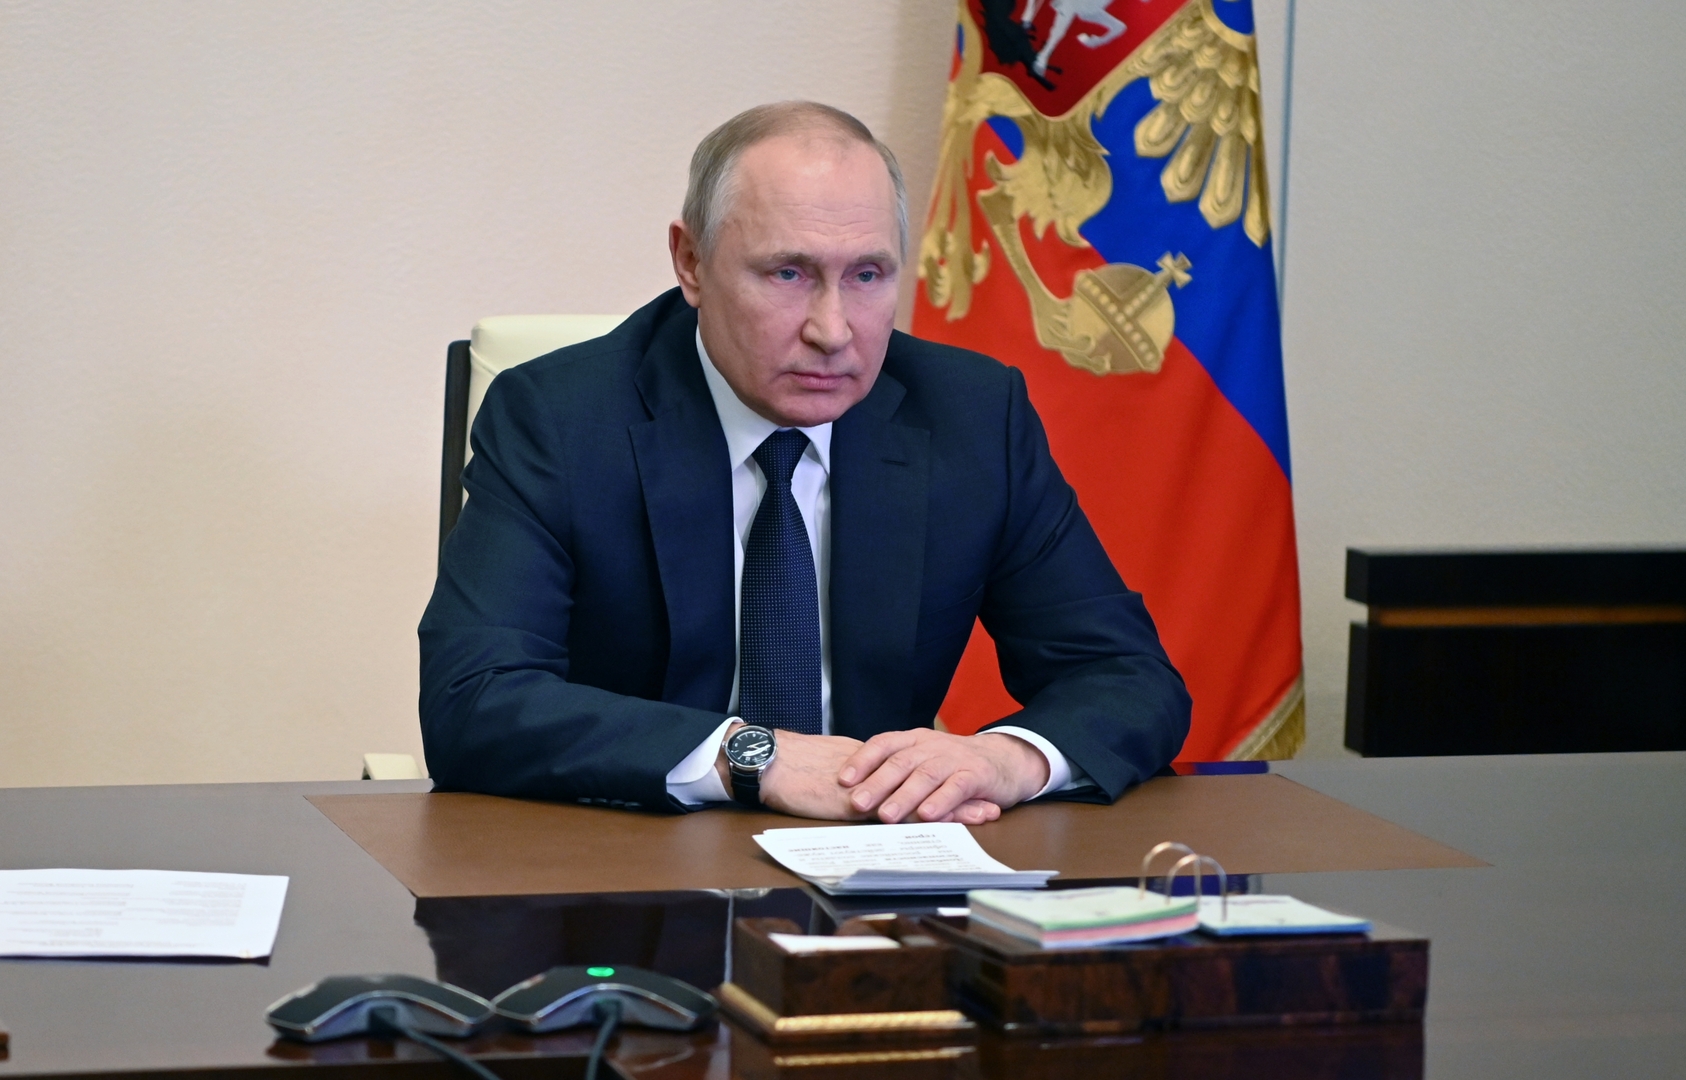 بوتين يؤكد أن روسيا ترد فقط على الإجراءات السلبية للدول الأخرى ويدعو الدول المجاورة لعدم التصعيد